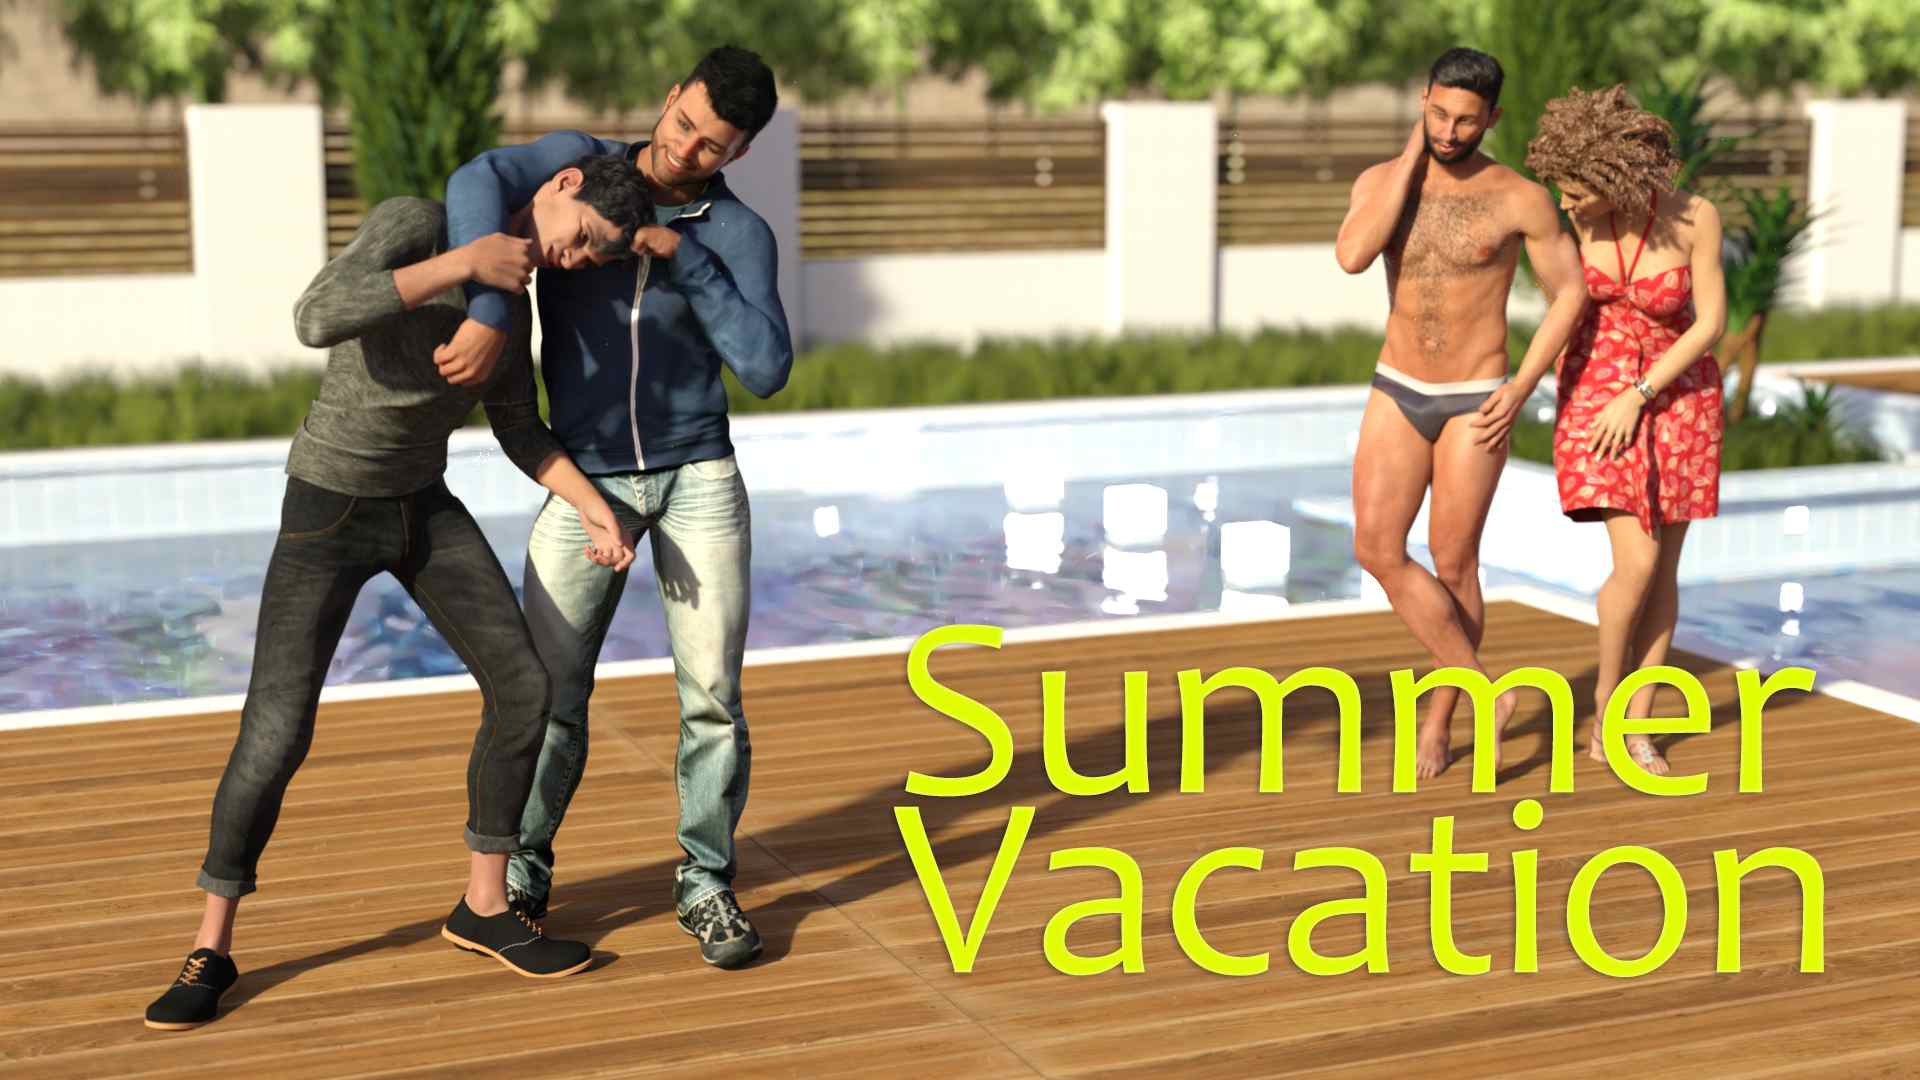 Summer Vacation [ErwinVN] Adult xxx Game Download